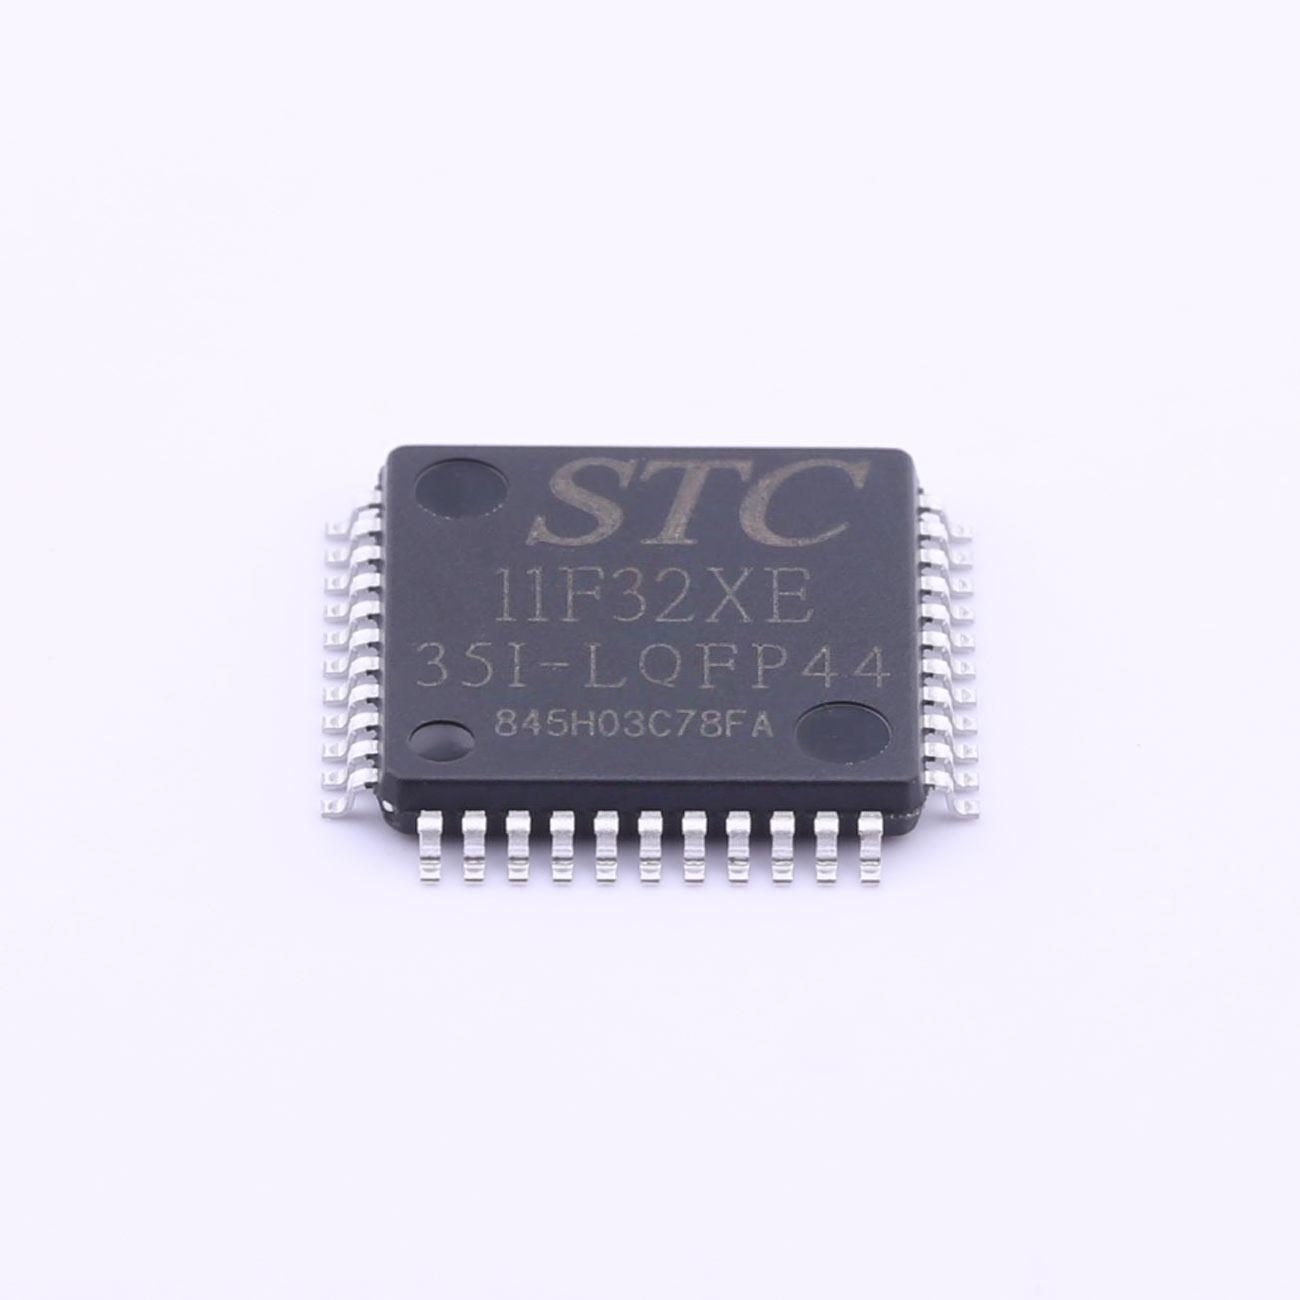 STC11F32XE-35I-LQFP44